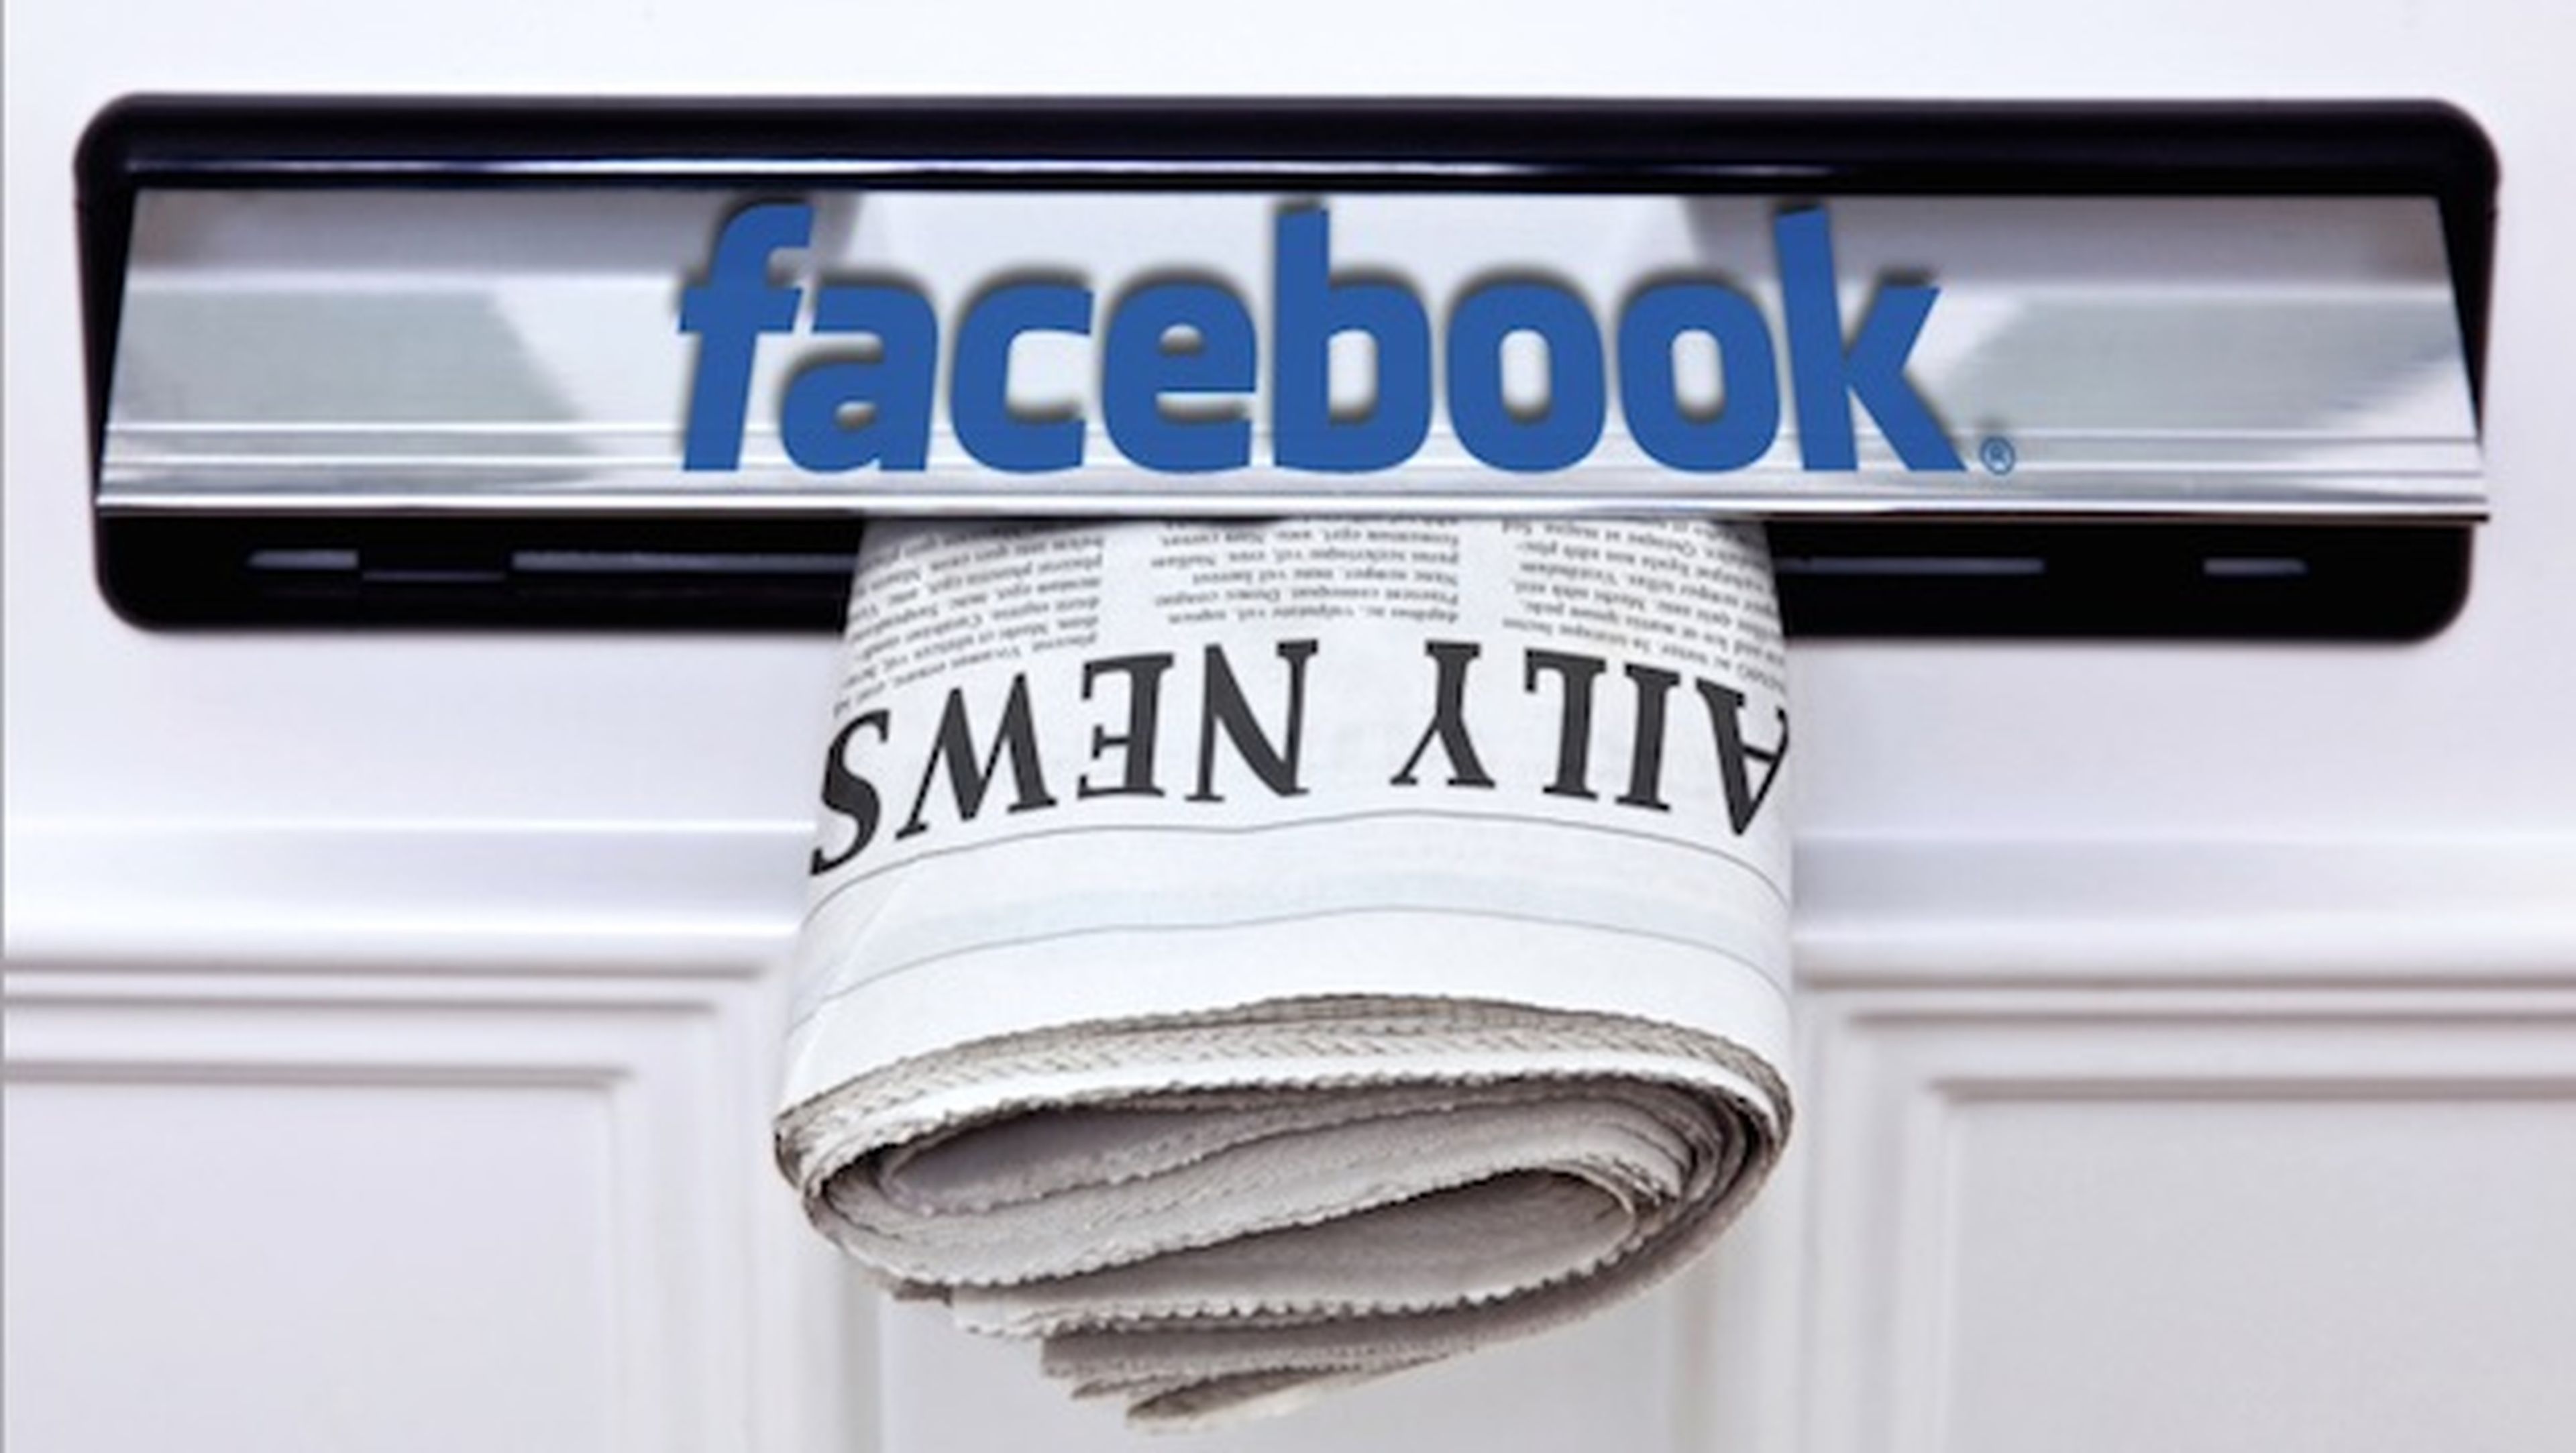 Facebook albergará noticias y artículos completos